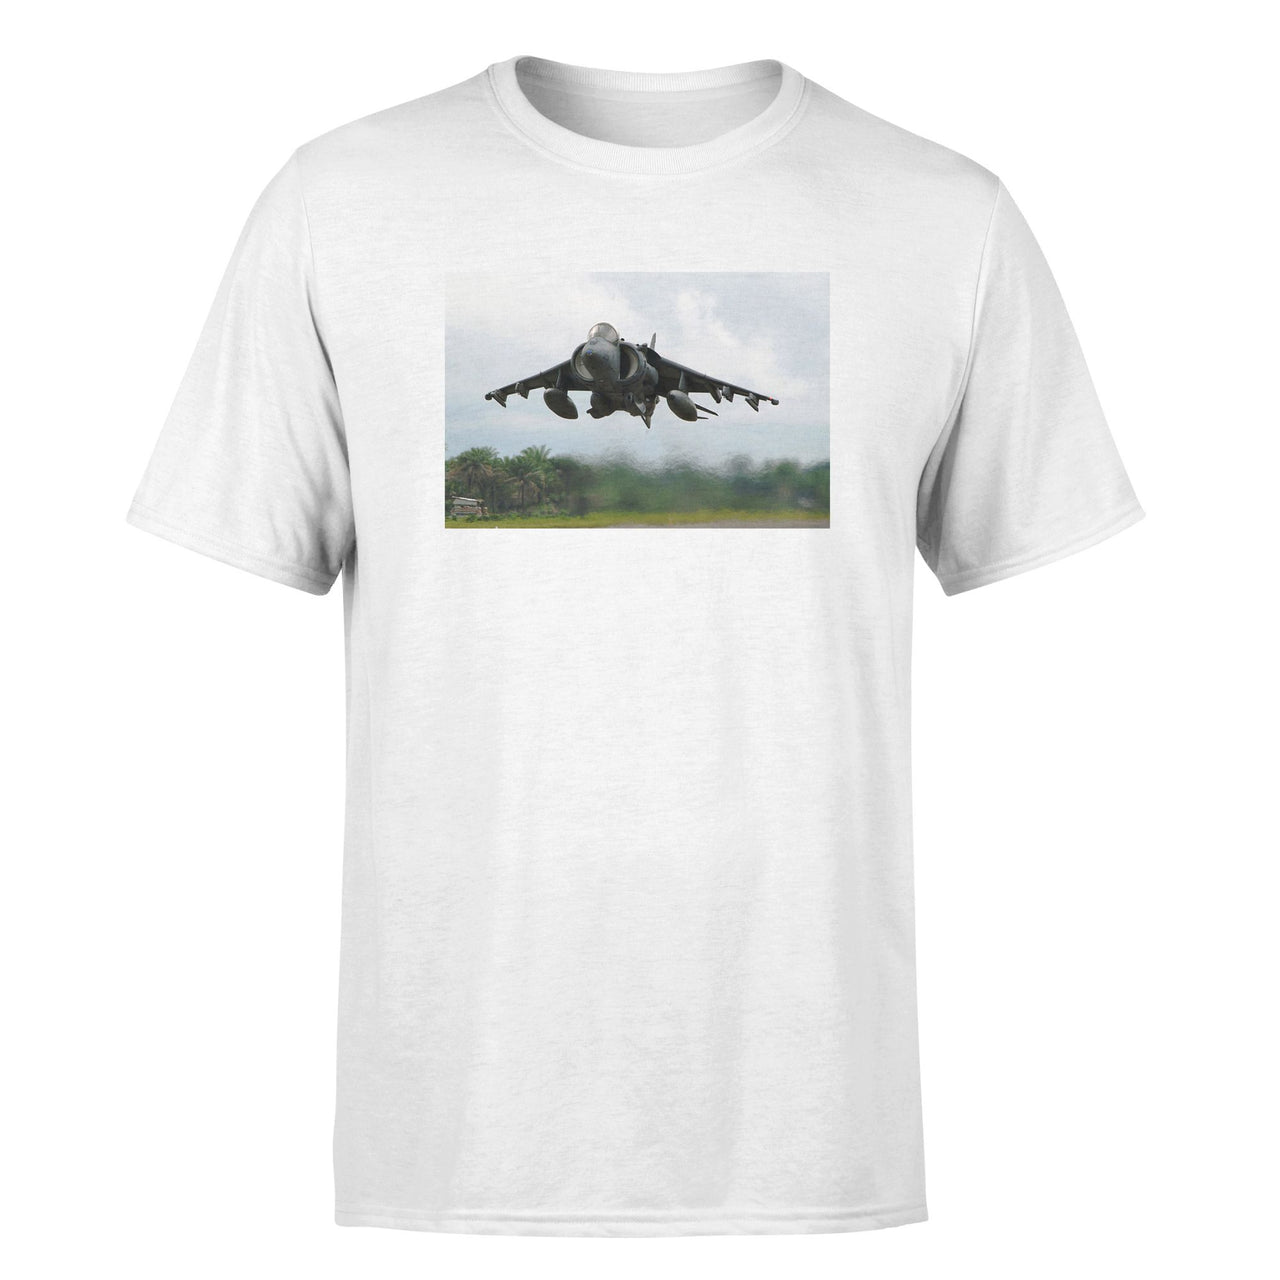 Departing Super Fighter Jet Designed T-Shirts